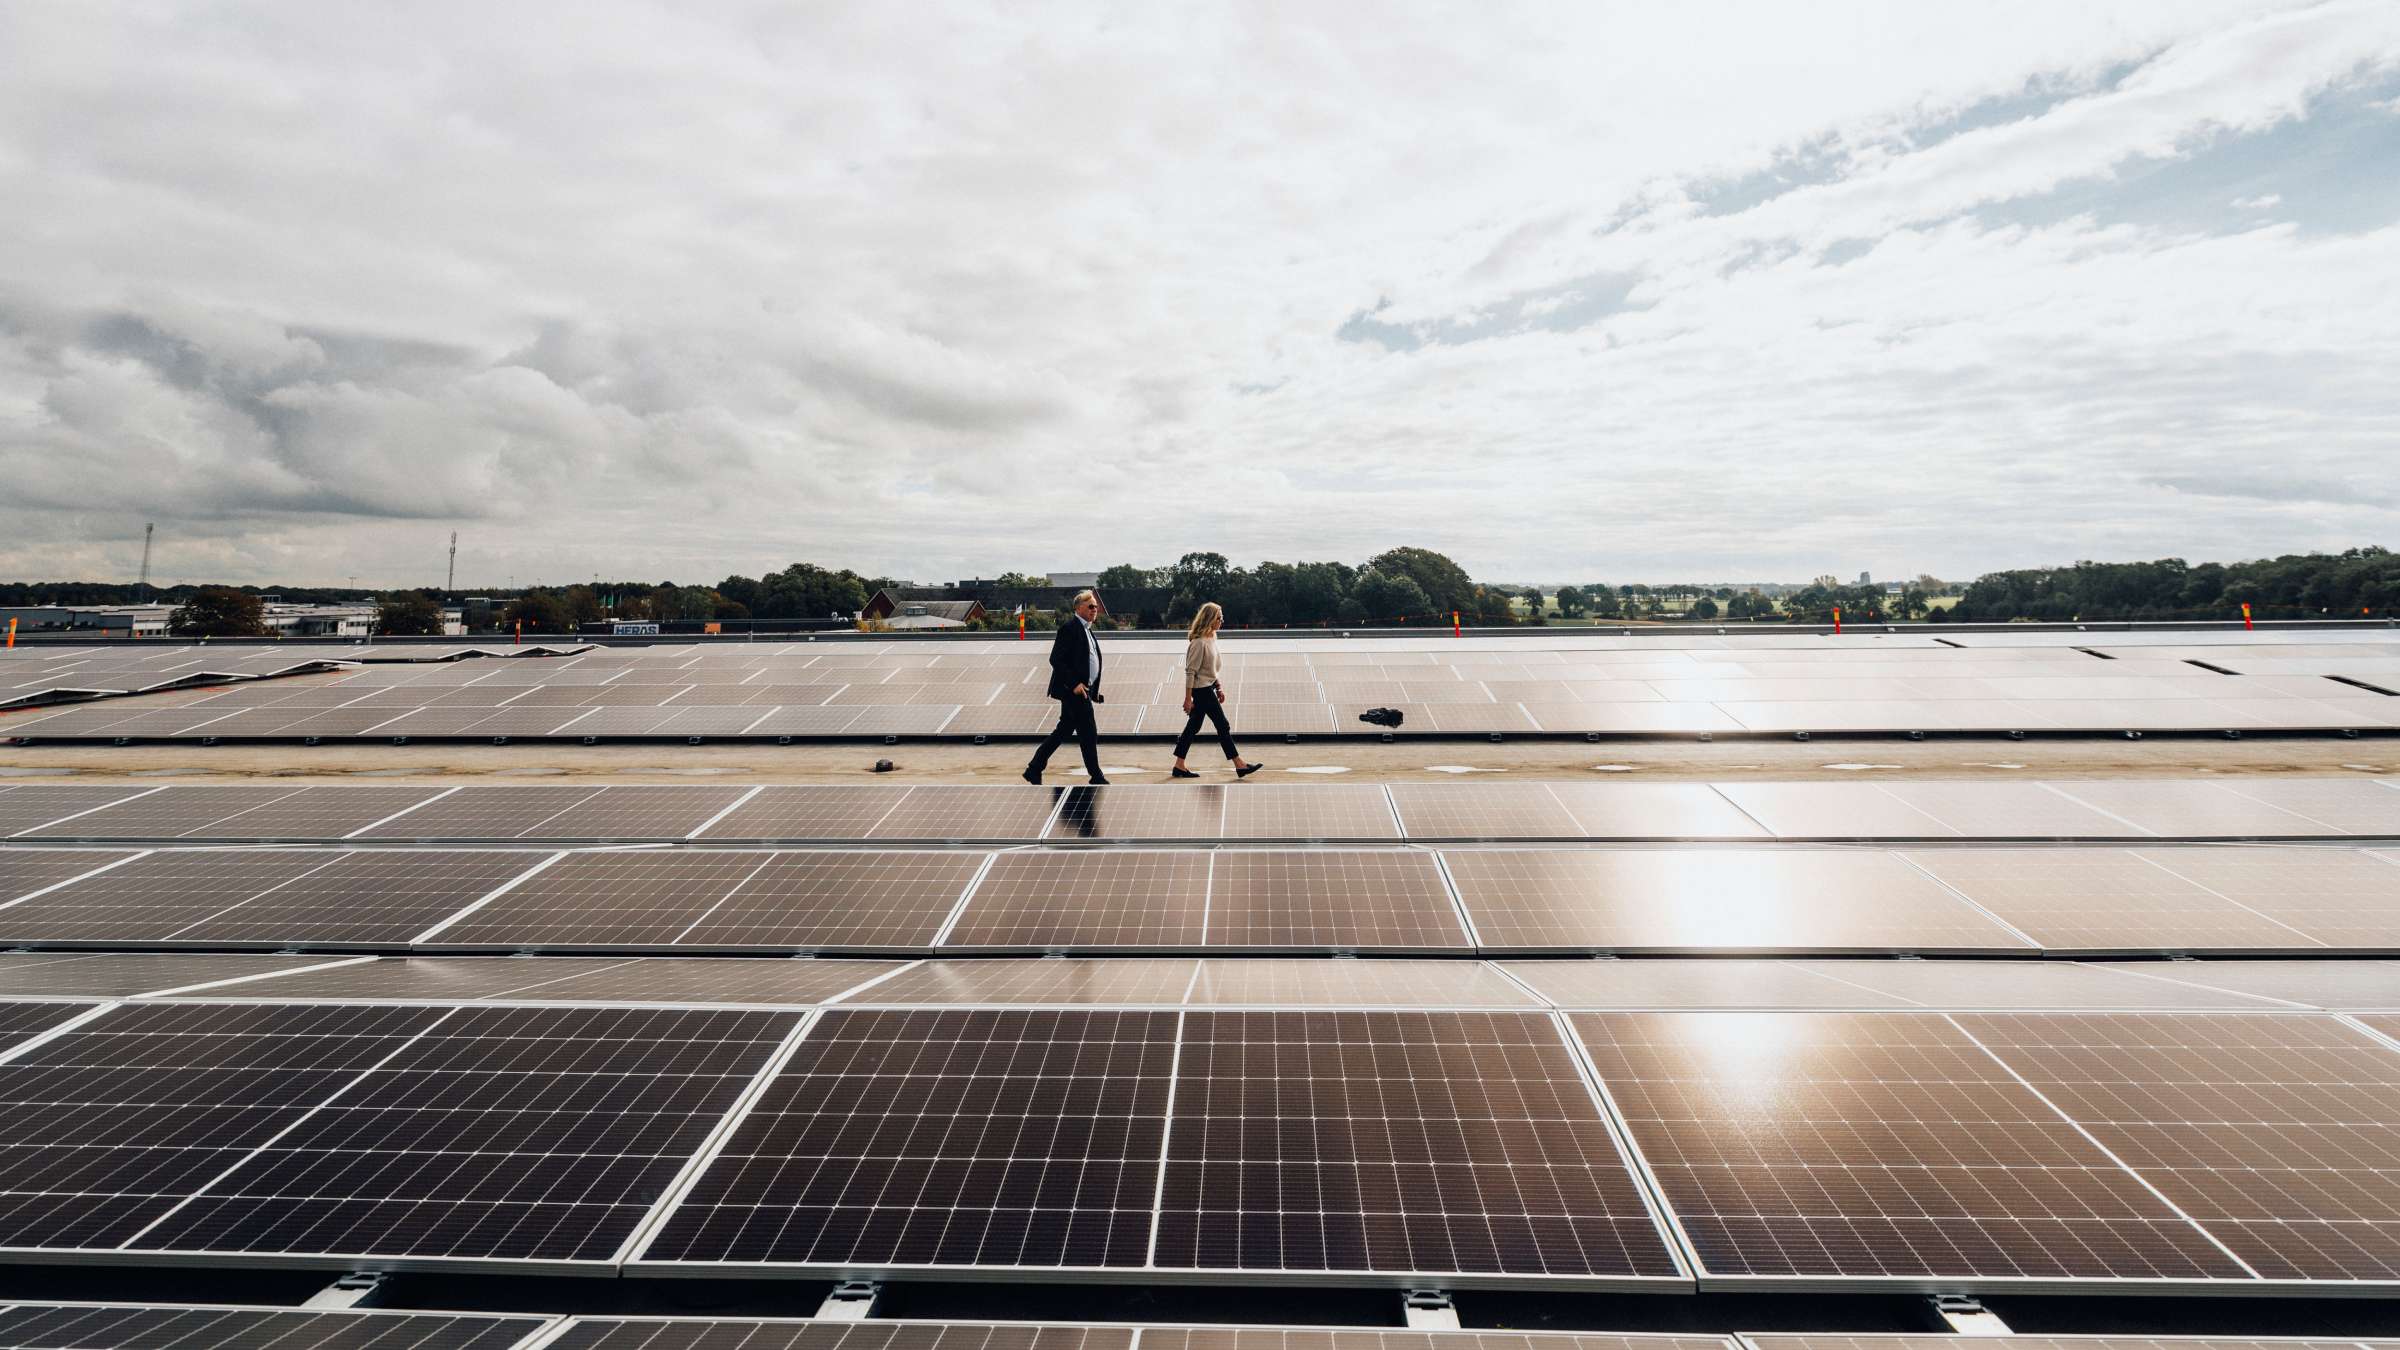 Två personer går på ett tak med solceller.